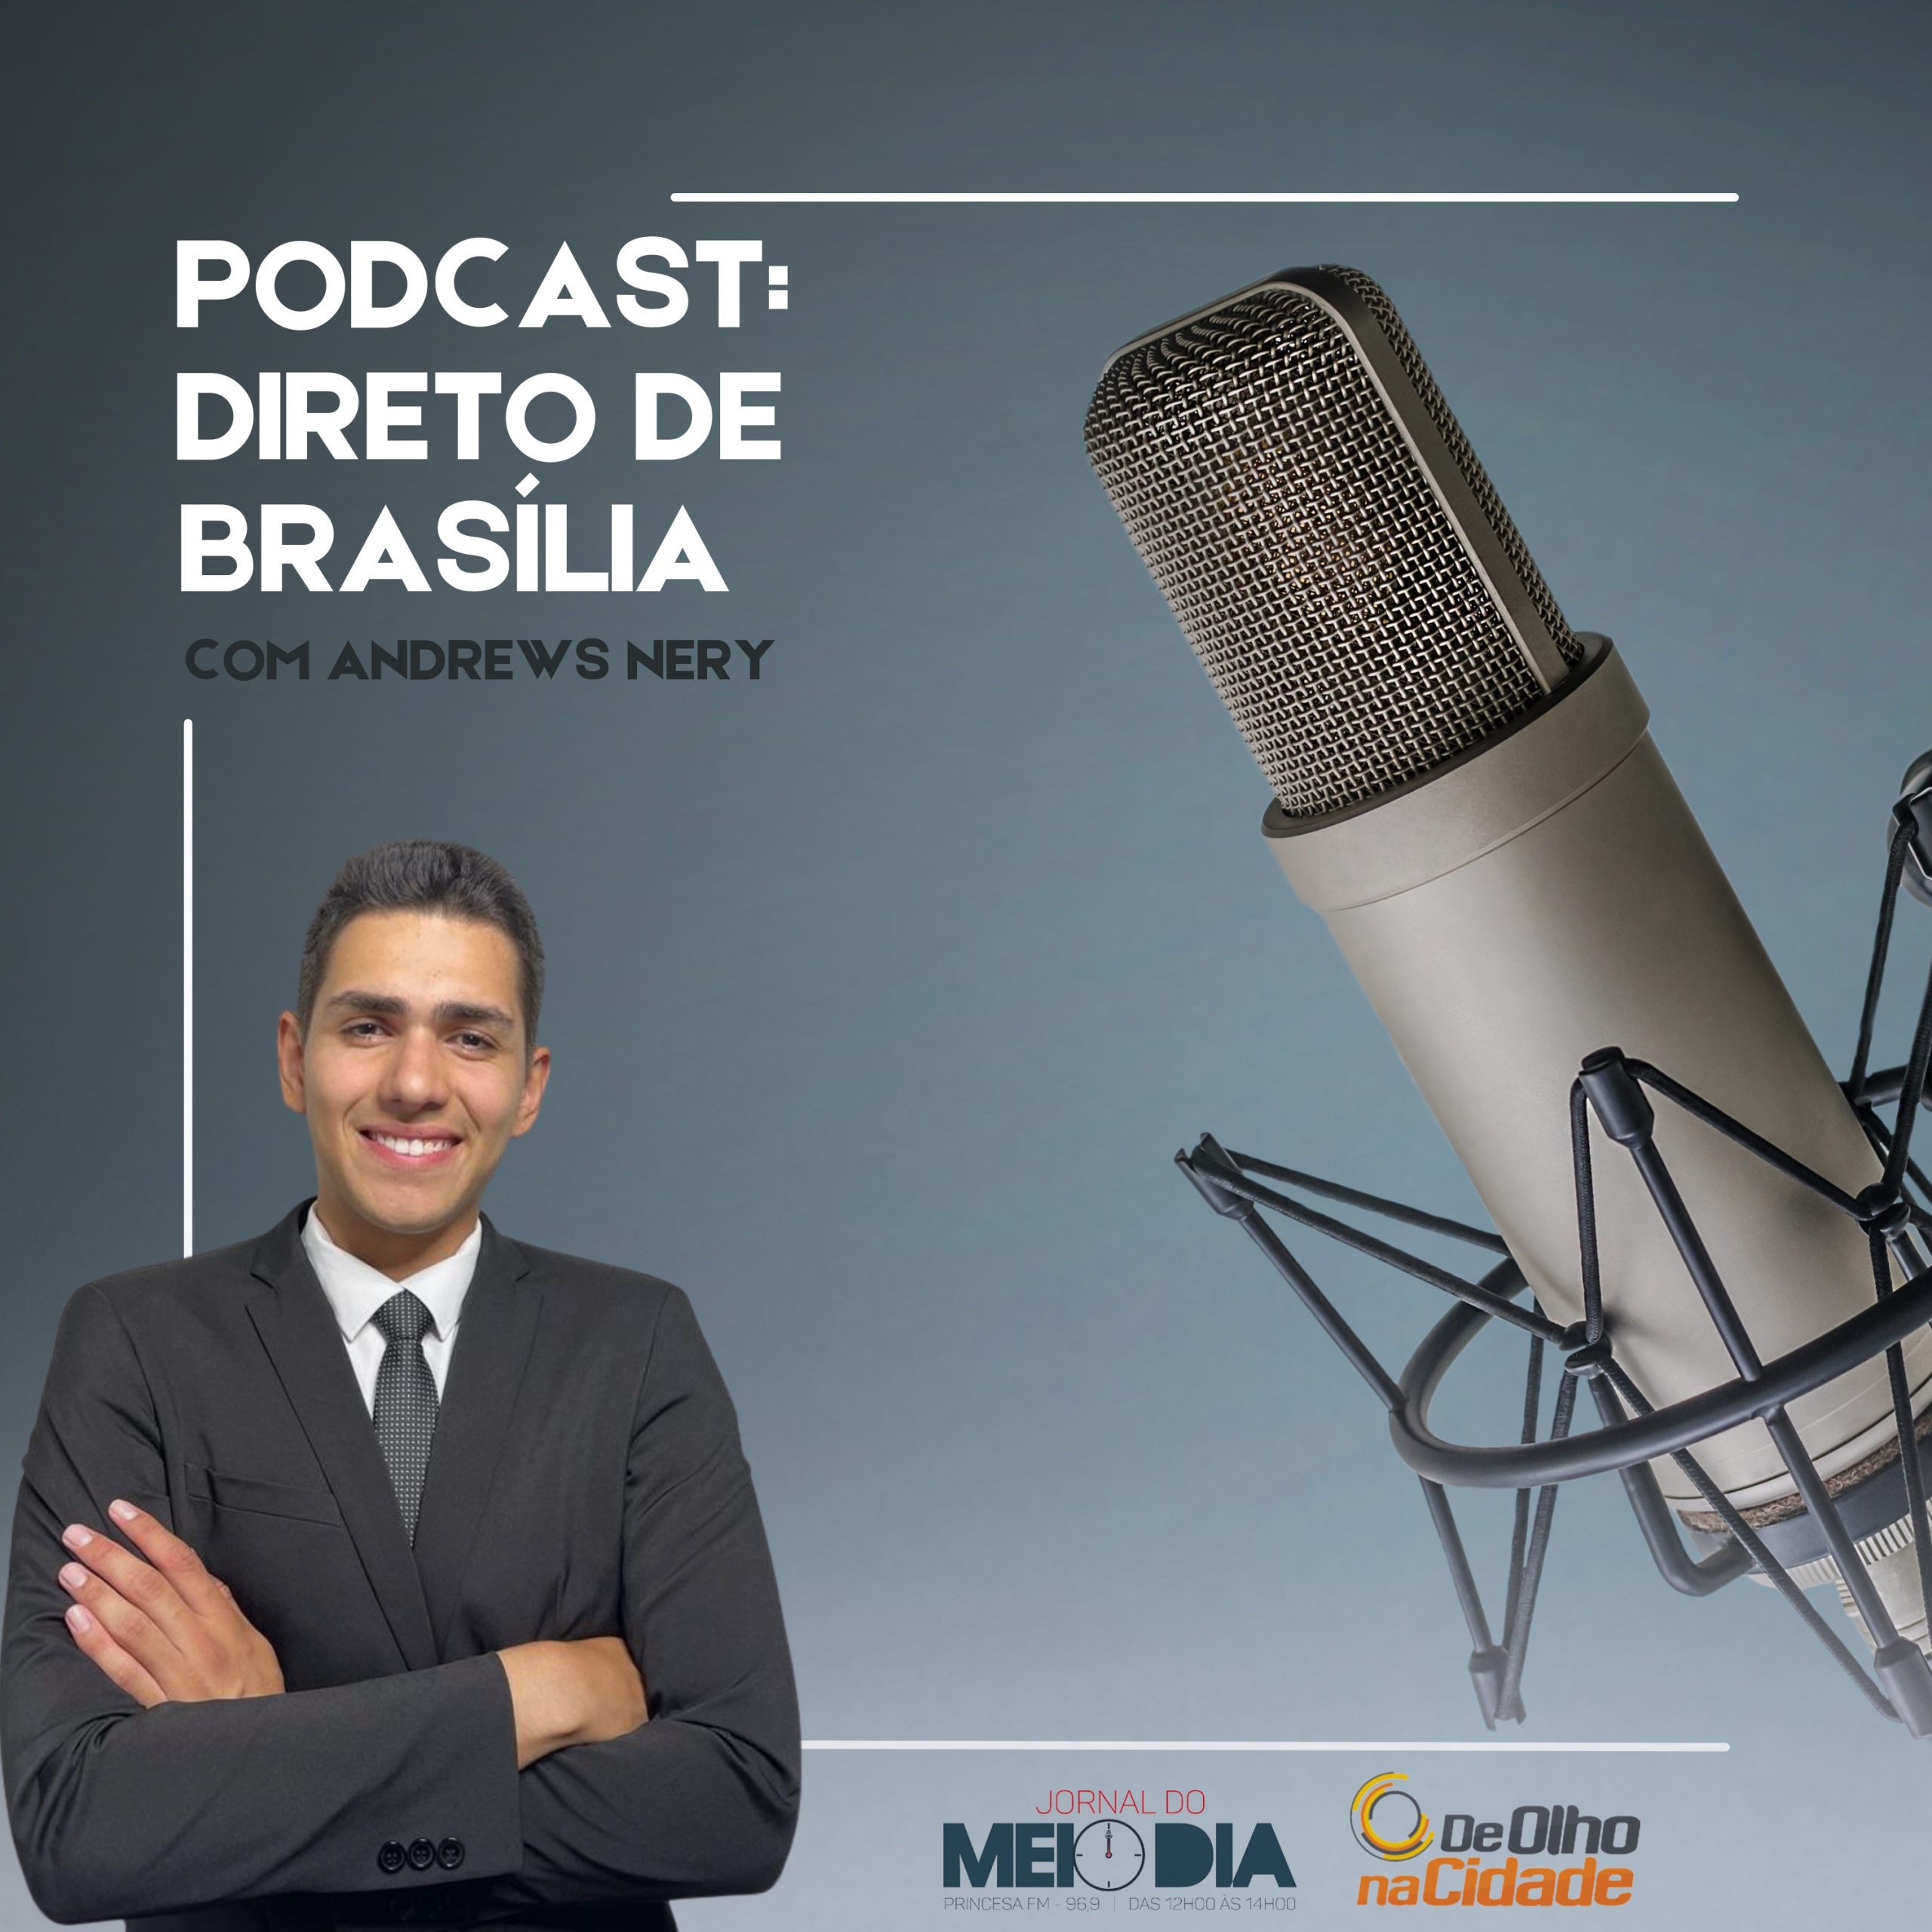 Podcast: Direto de Brasília com Andrews Nery (21/03)